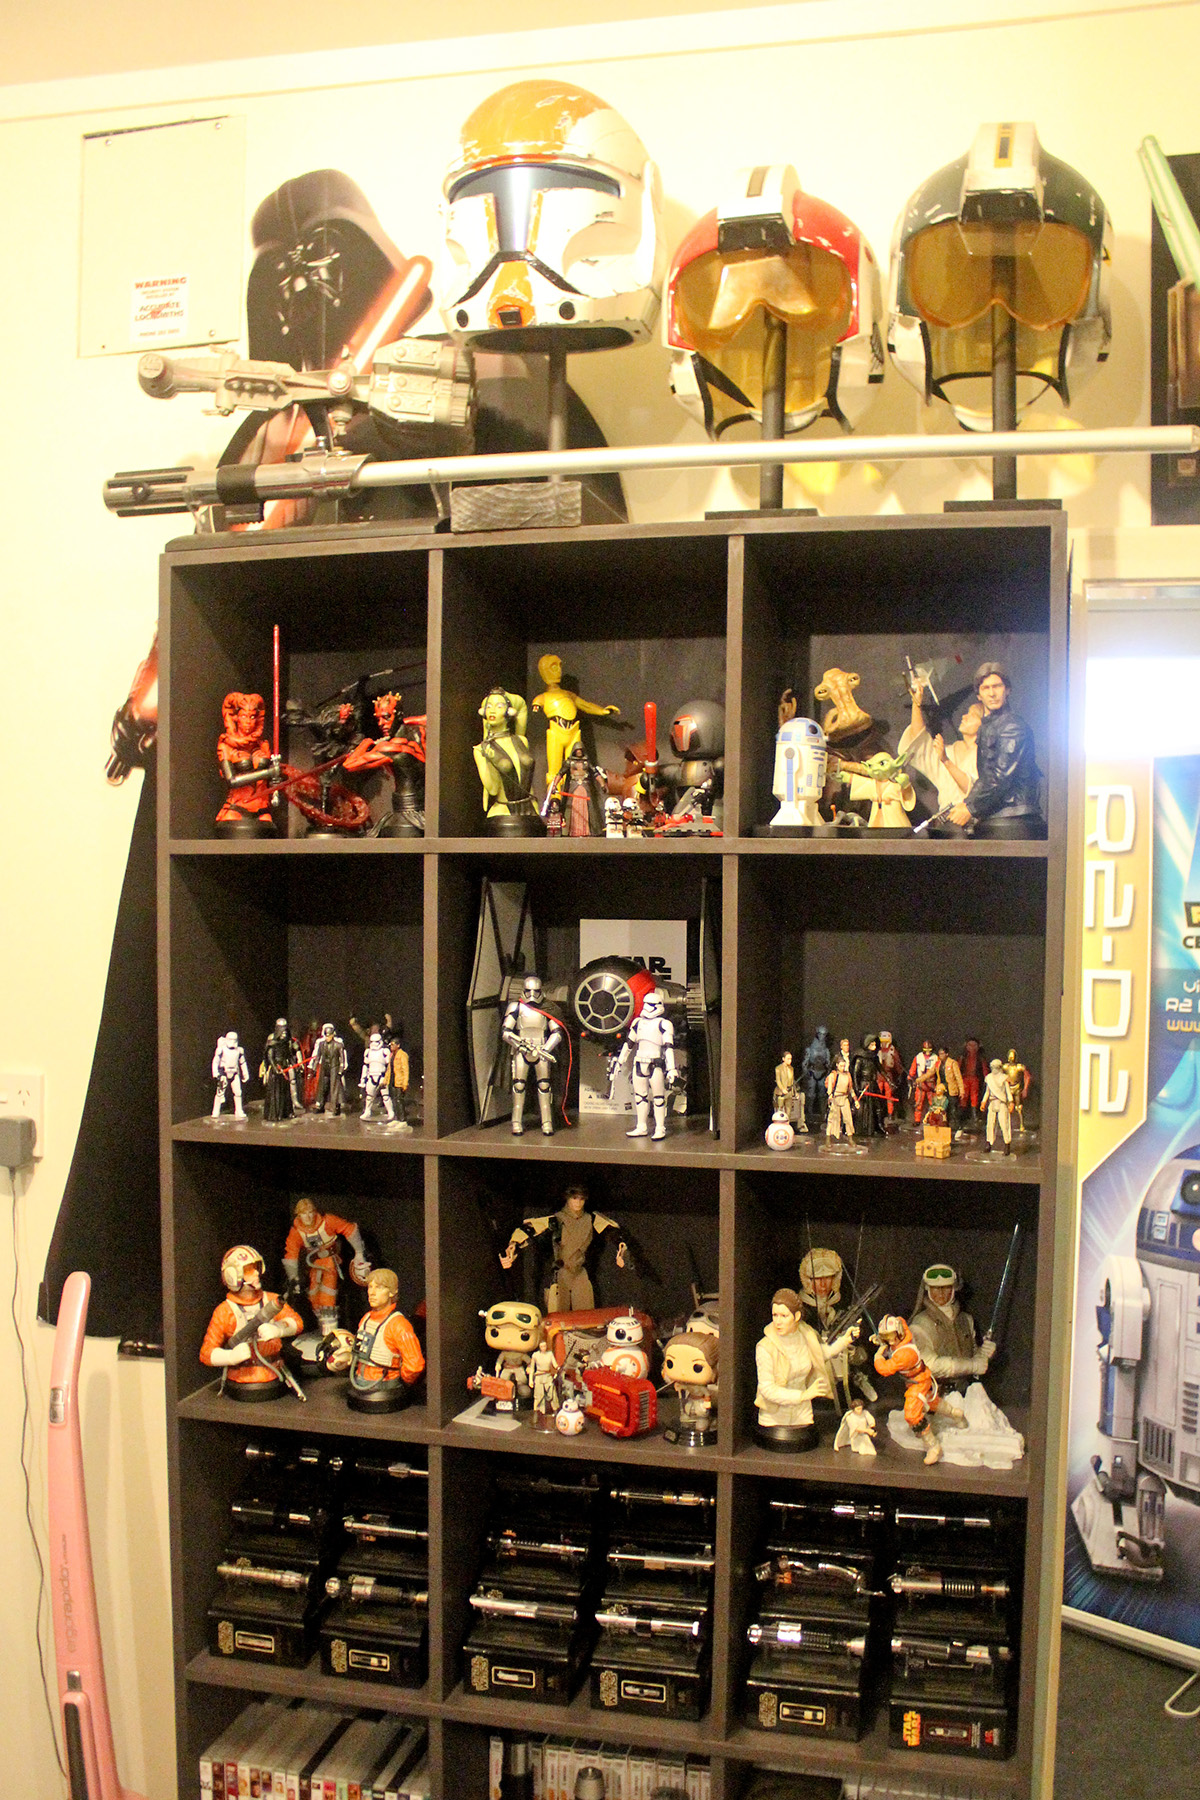 Shelf displays